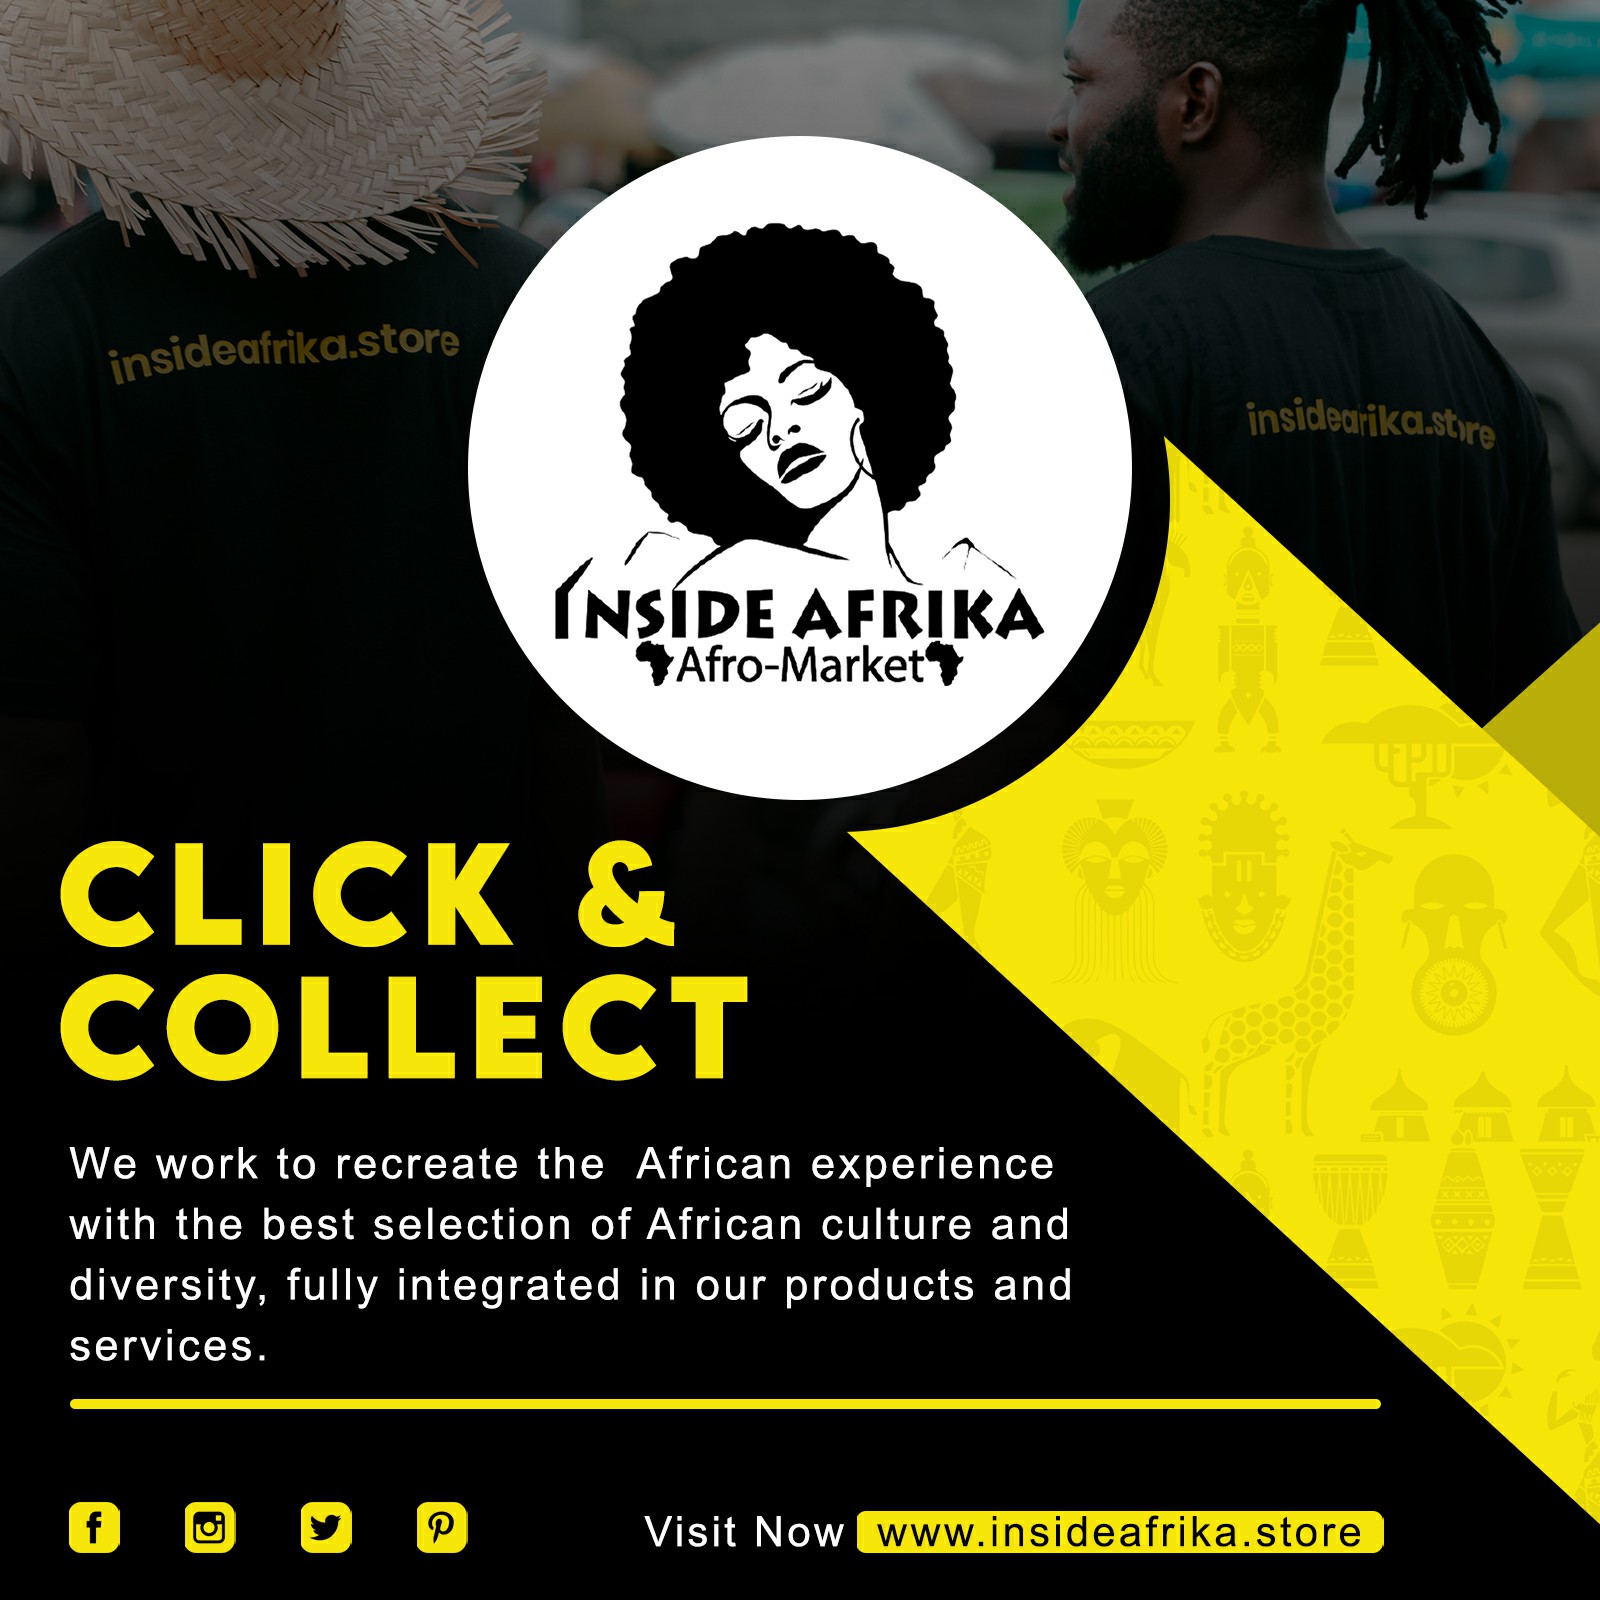 Web Spectron | Inside Afrika Store | Best Cameroon Marketing Agency